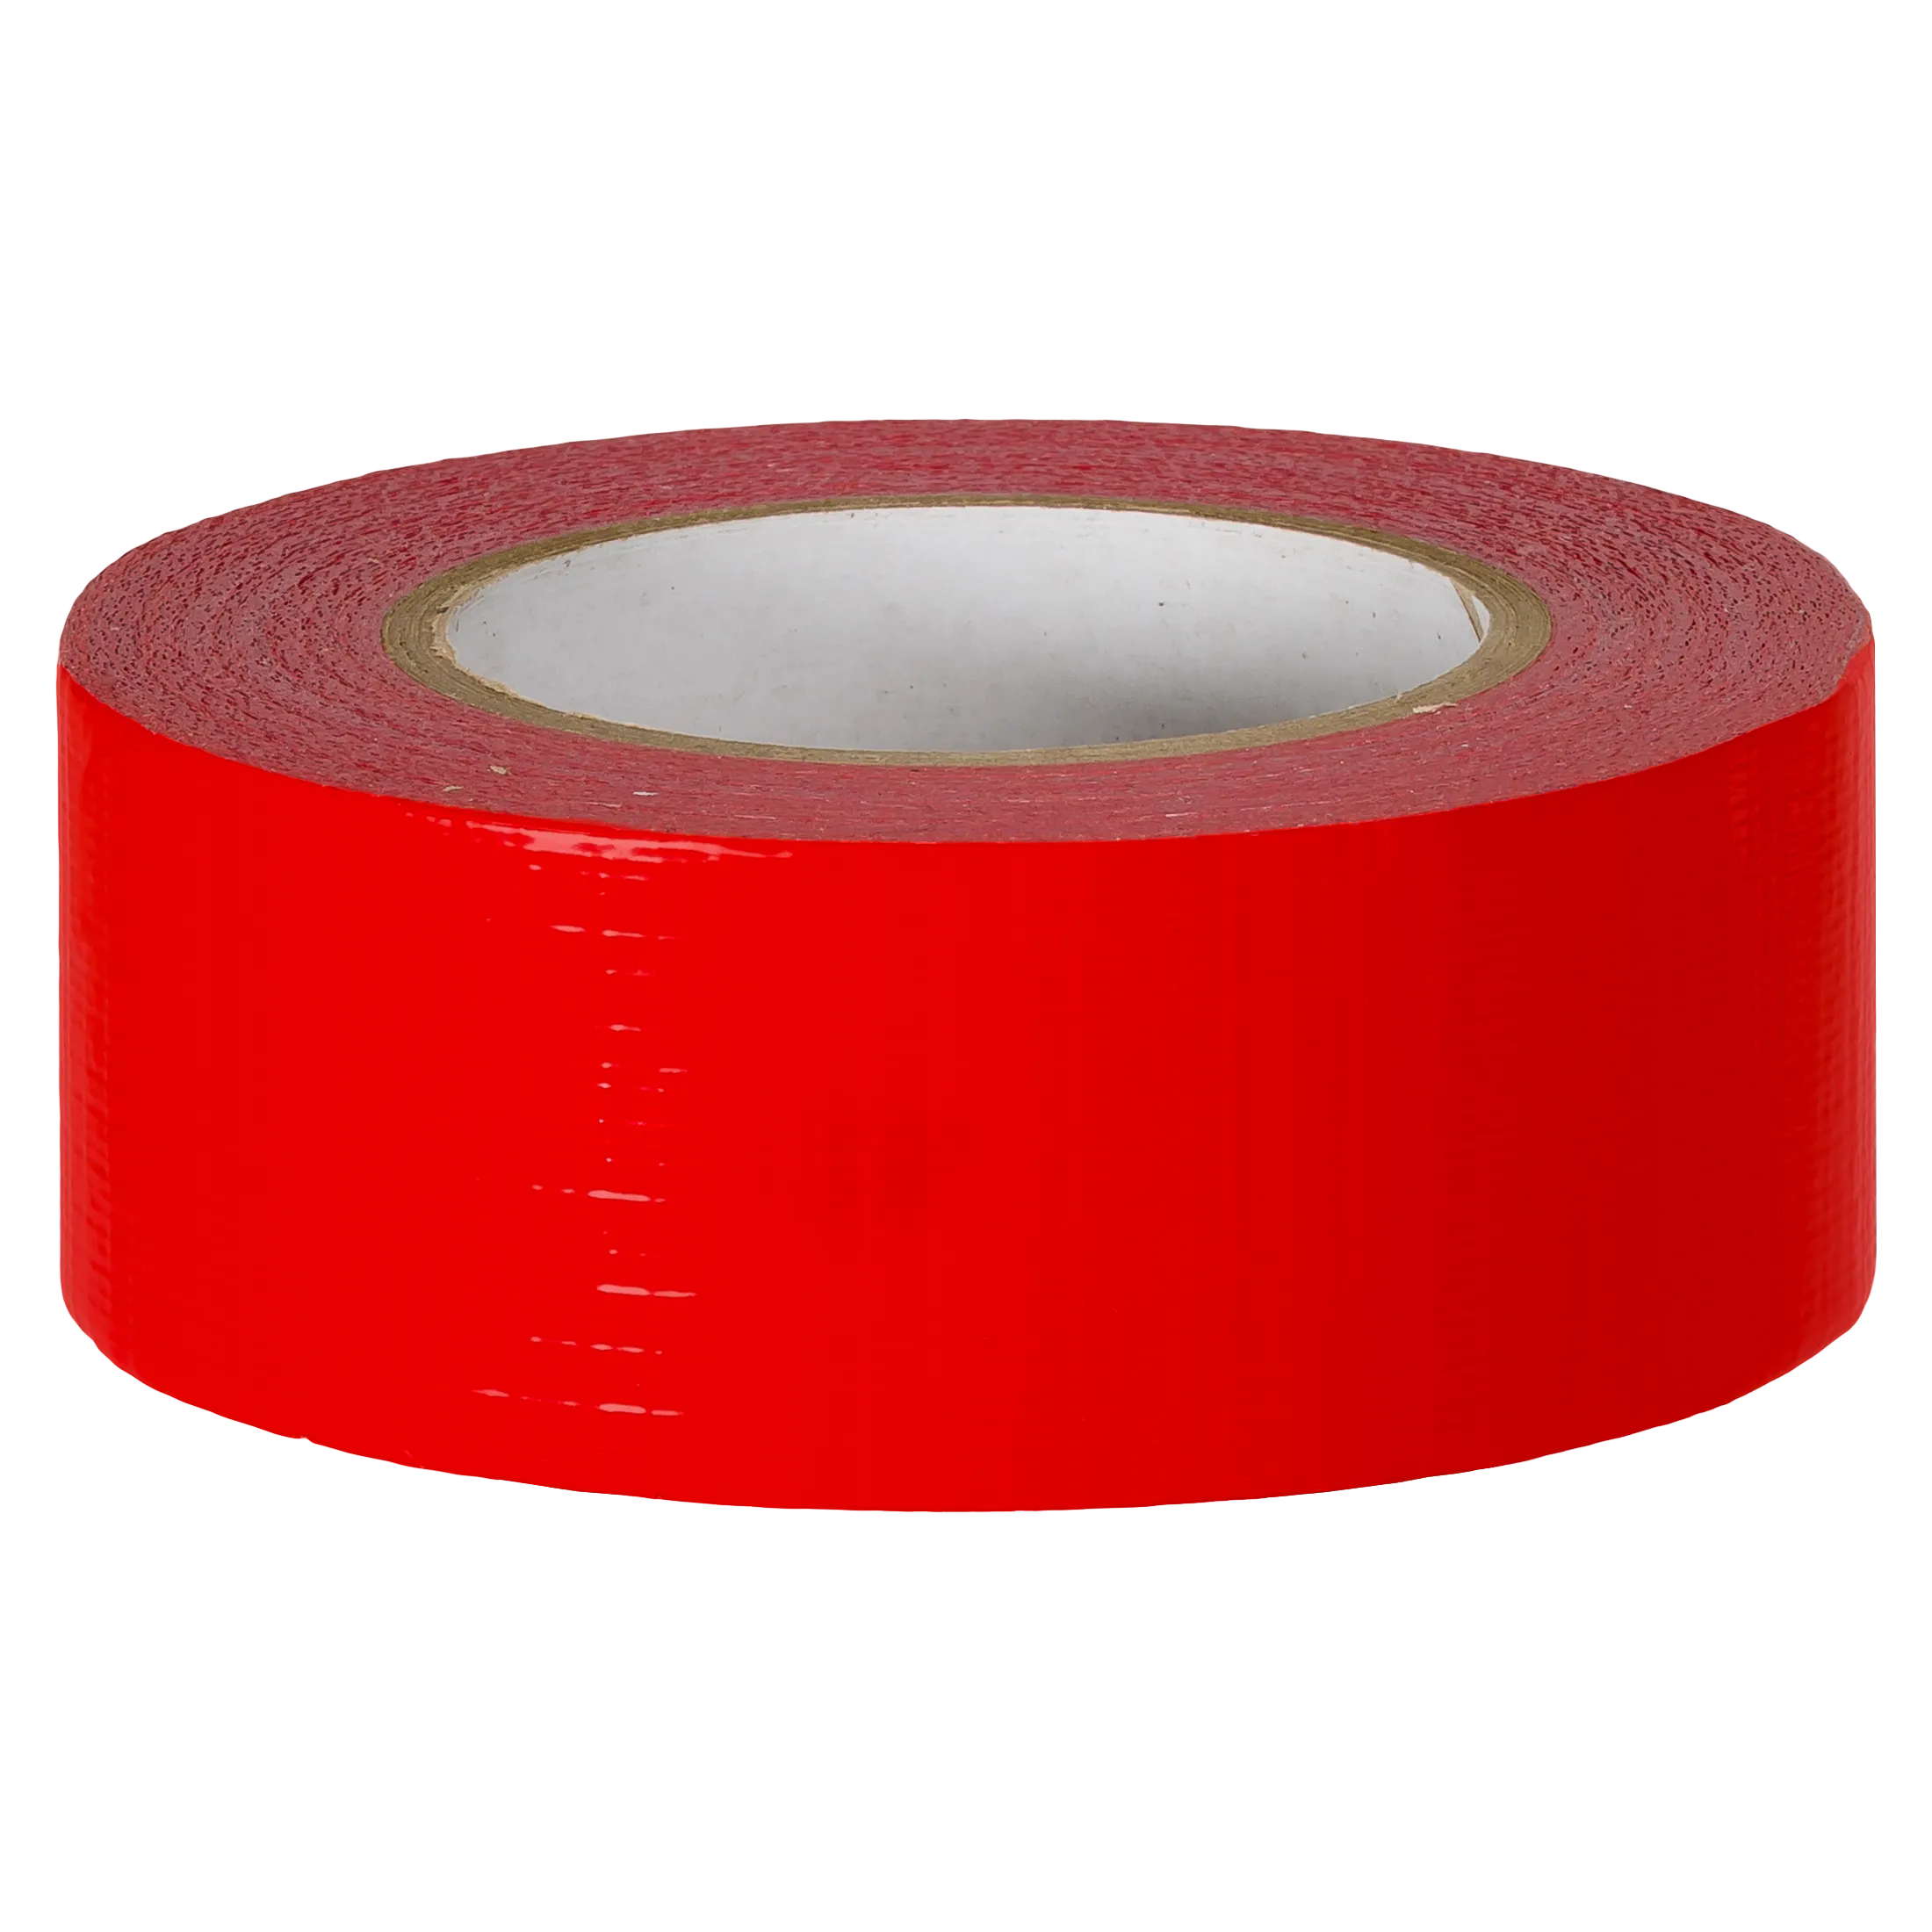 Anoniem tekort wiel Duct Tape standaard uitvoering in Rood 50mm bij 50 meter